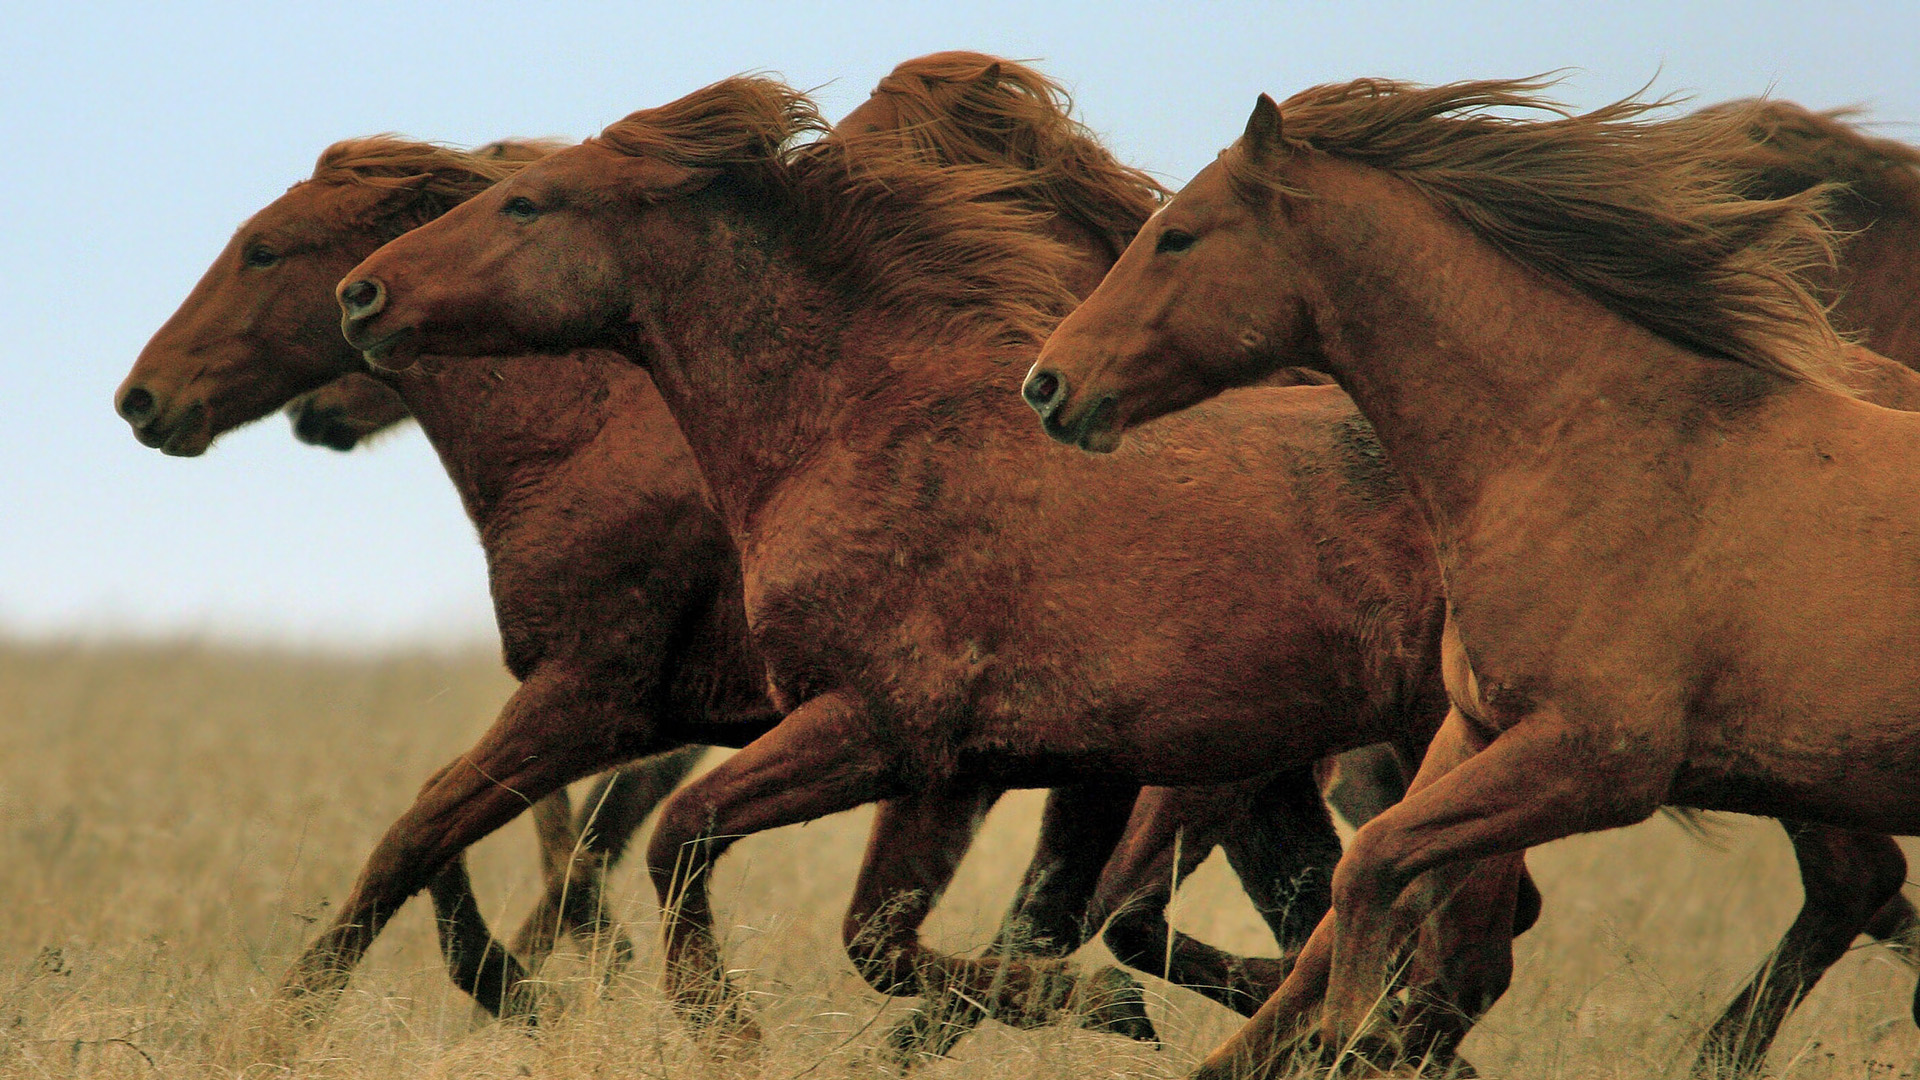 Khu bảo tồn thiên nhiên Rostovsky State Steppe là nơi trú ngụ của những con ngựa hoang dã tuyệt vời. Với khung cảnh hoang sơ và đầy mê hoặc, con ngựa đang chạy thảnh thơi chắc chắn sẽ khiến bạn trầm trồ và thích thú.